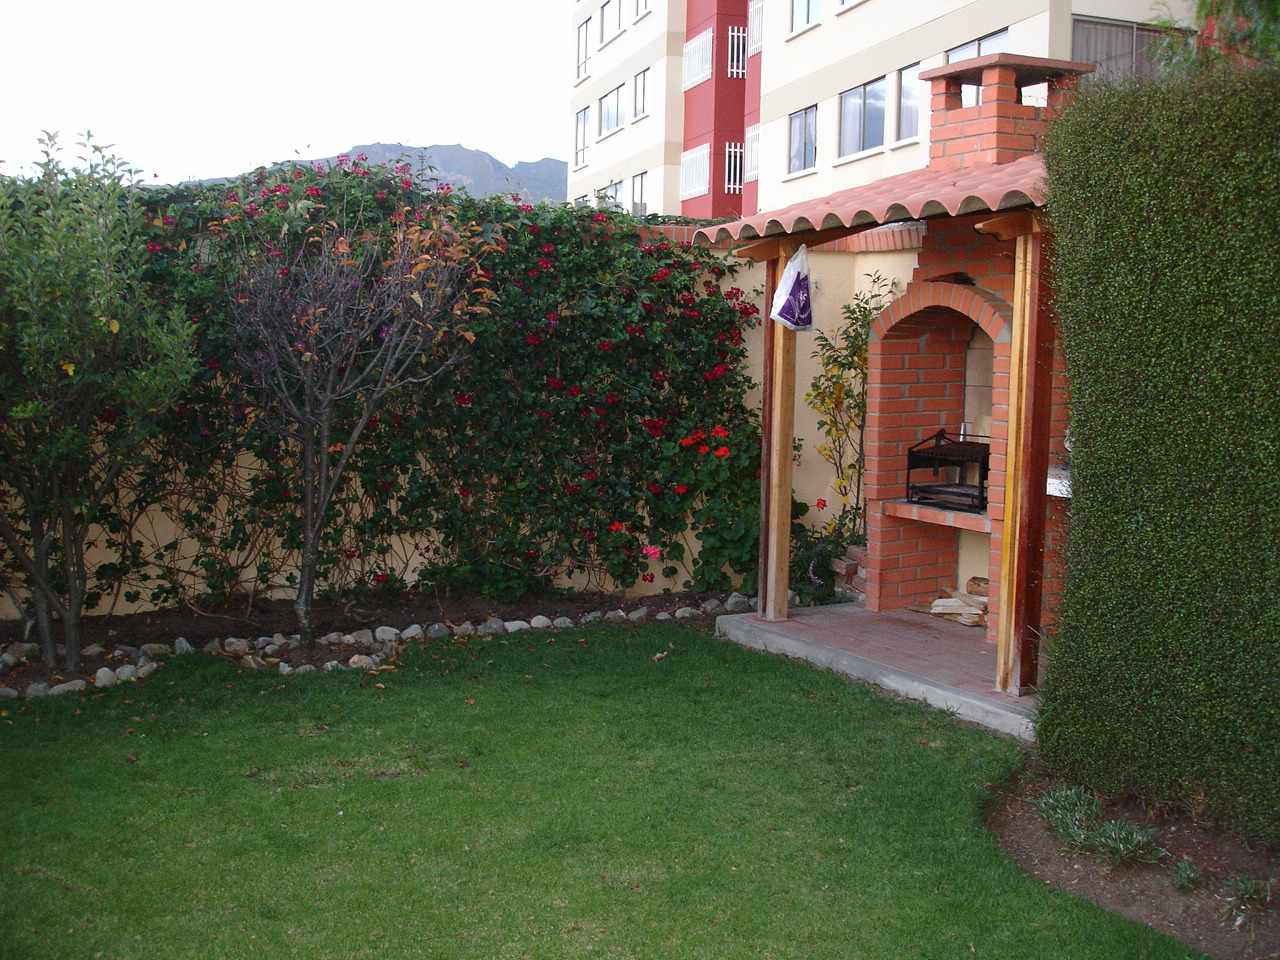 Casa en AlquilerRosendo Reyes 115 - Entre 26 y 27 - Cota Cota 4 dormitorios 4 baños 2 parqueos Foto 1